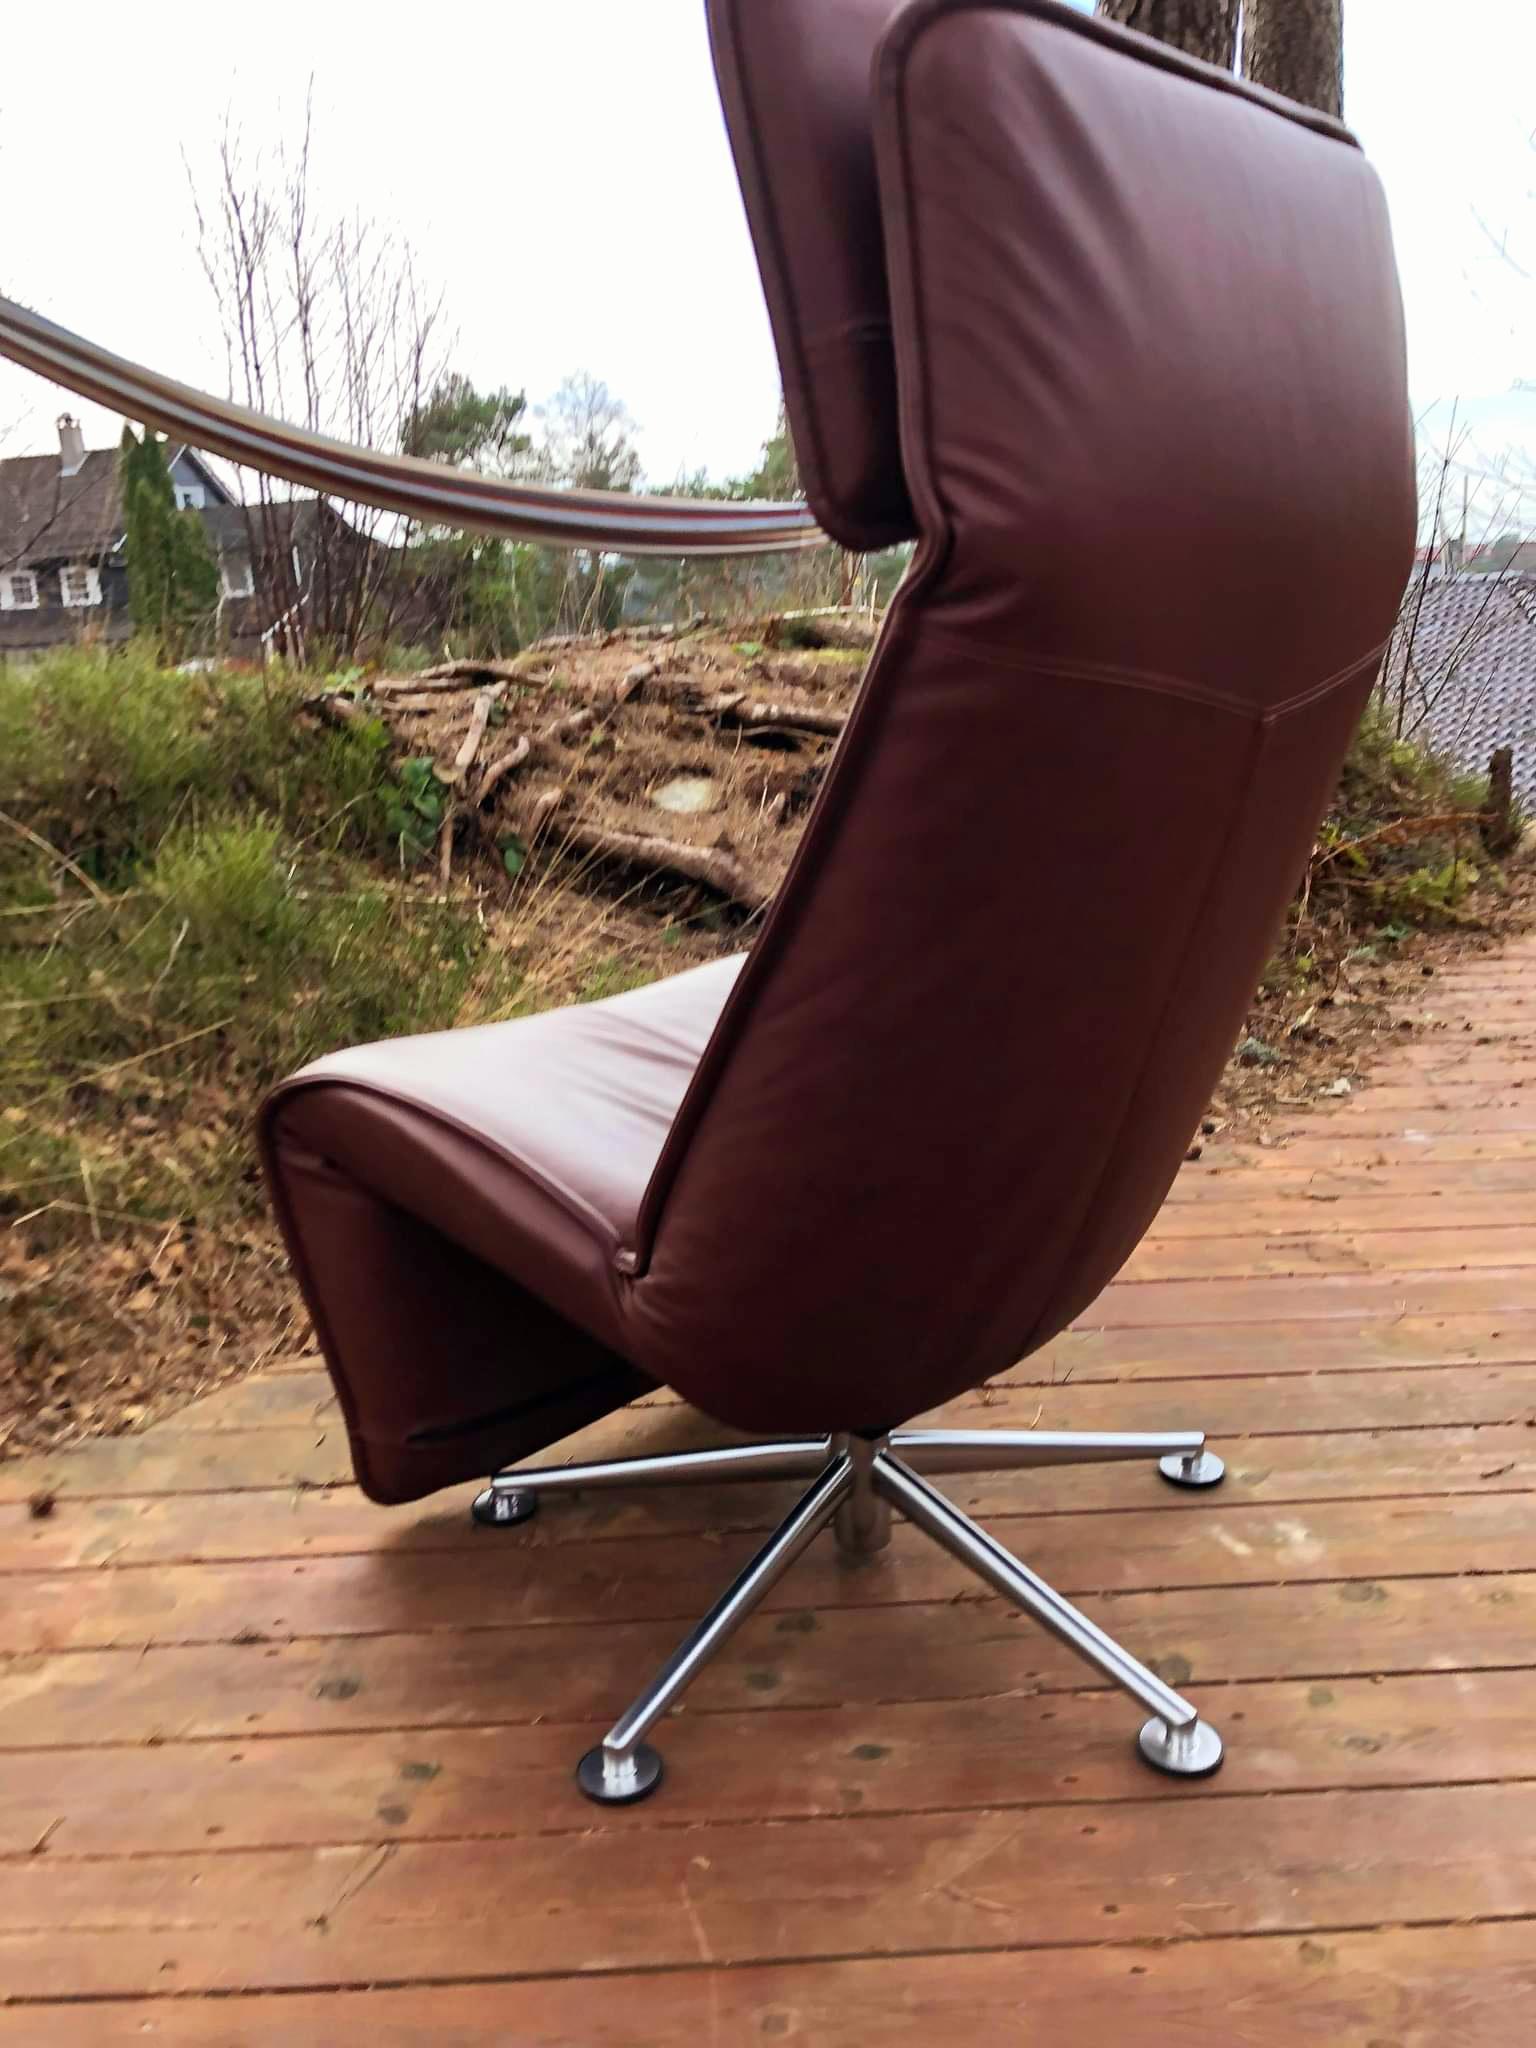 2 Fauteuils en cuir brun whisky sur base aluminium.
Les fauteuils ont de nombreux réglages tels que l'inclinaison du dossier, l'inclinaison de la nuque et l'oreiller réglable pour la nuque.
Peut pivoter à 360 degrés, vous donnant l'impression de